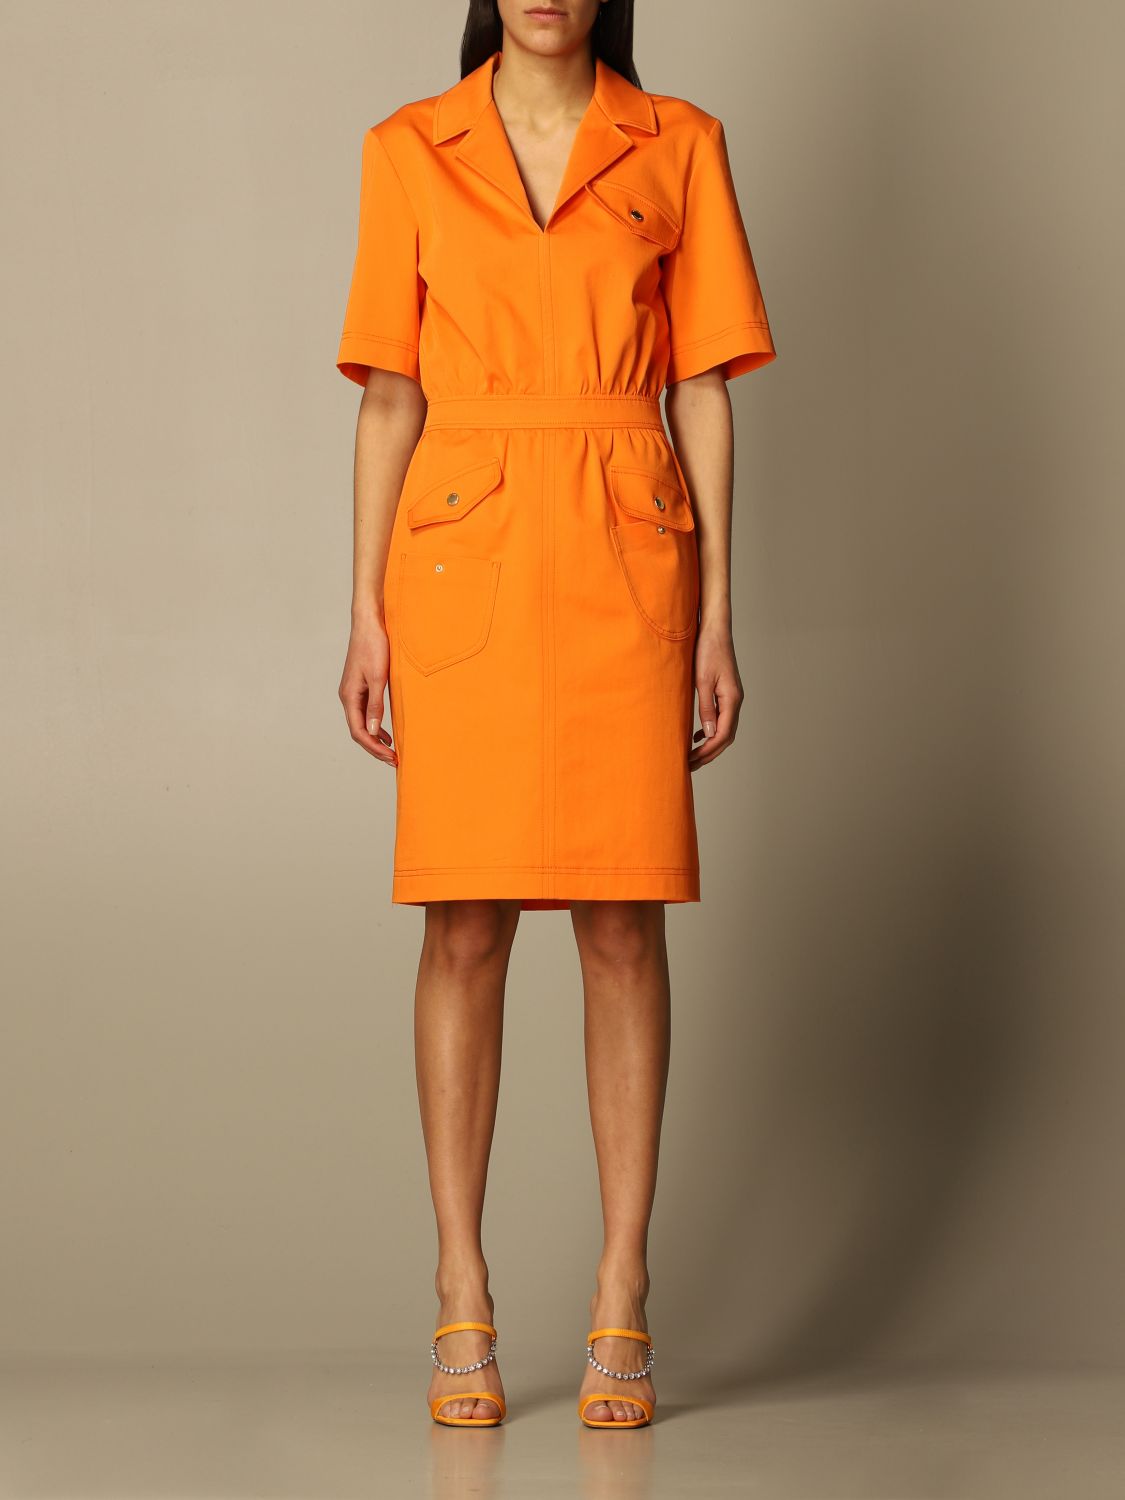 moschino orange dress